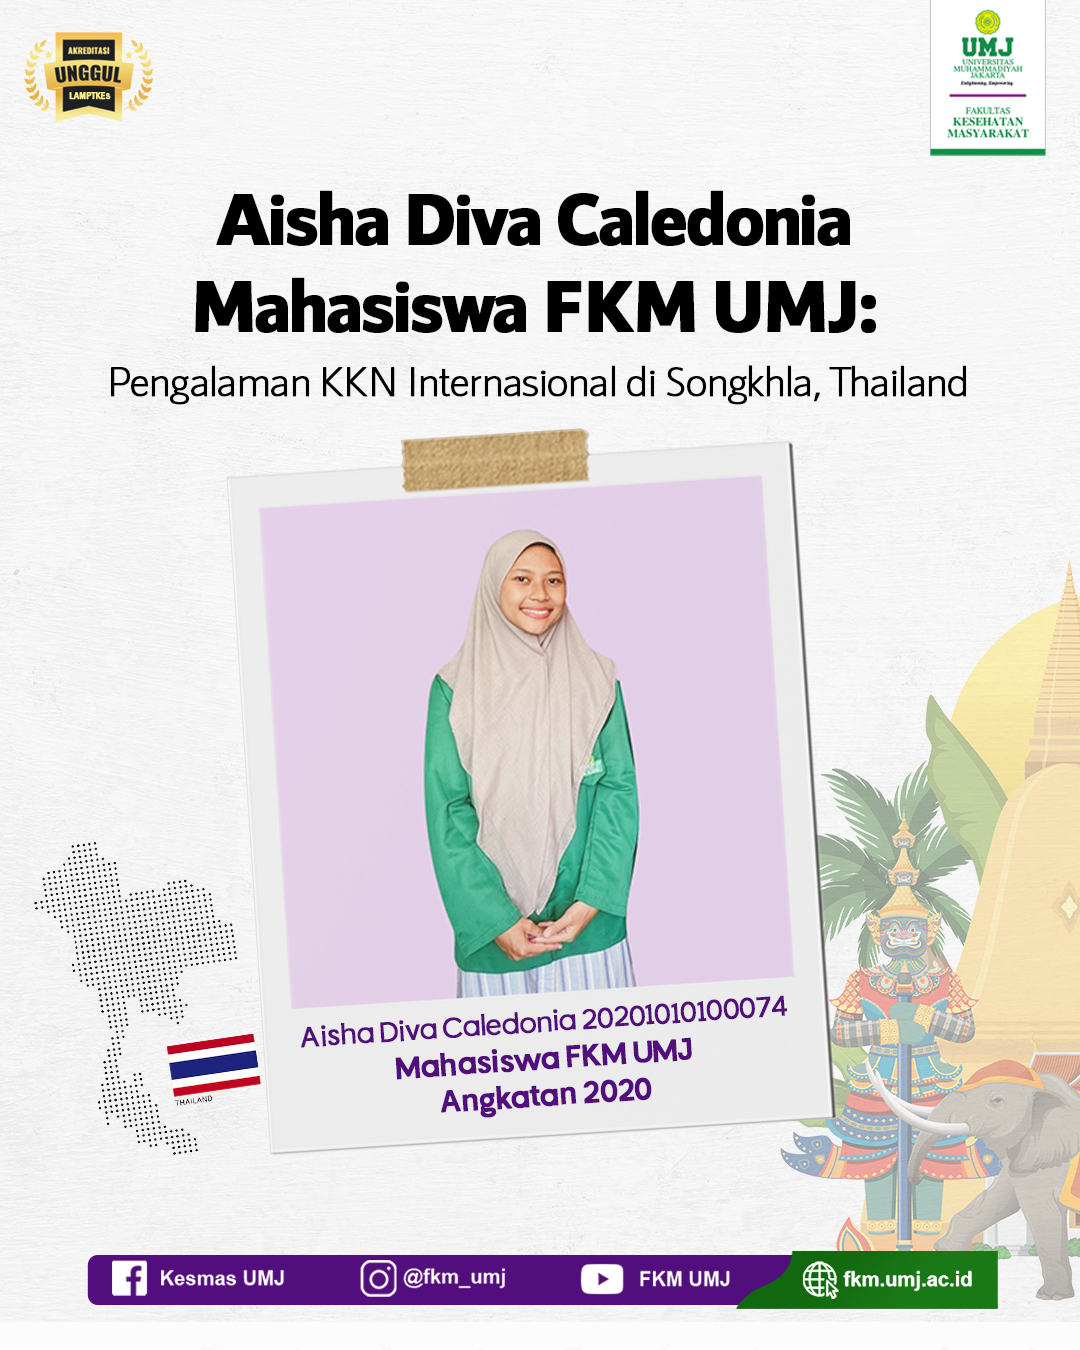 Aisha Diva Caledonia Mahasiswa FKM UMJ: Pengalaman KKN Internasional di Songkhla, Thailand